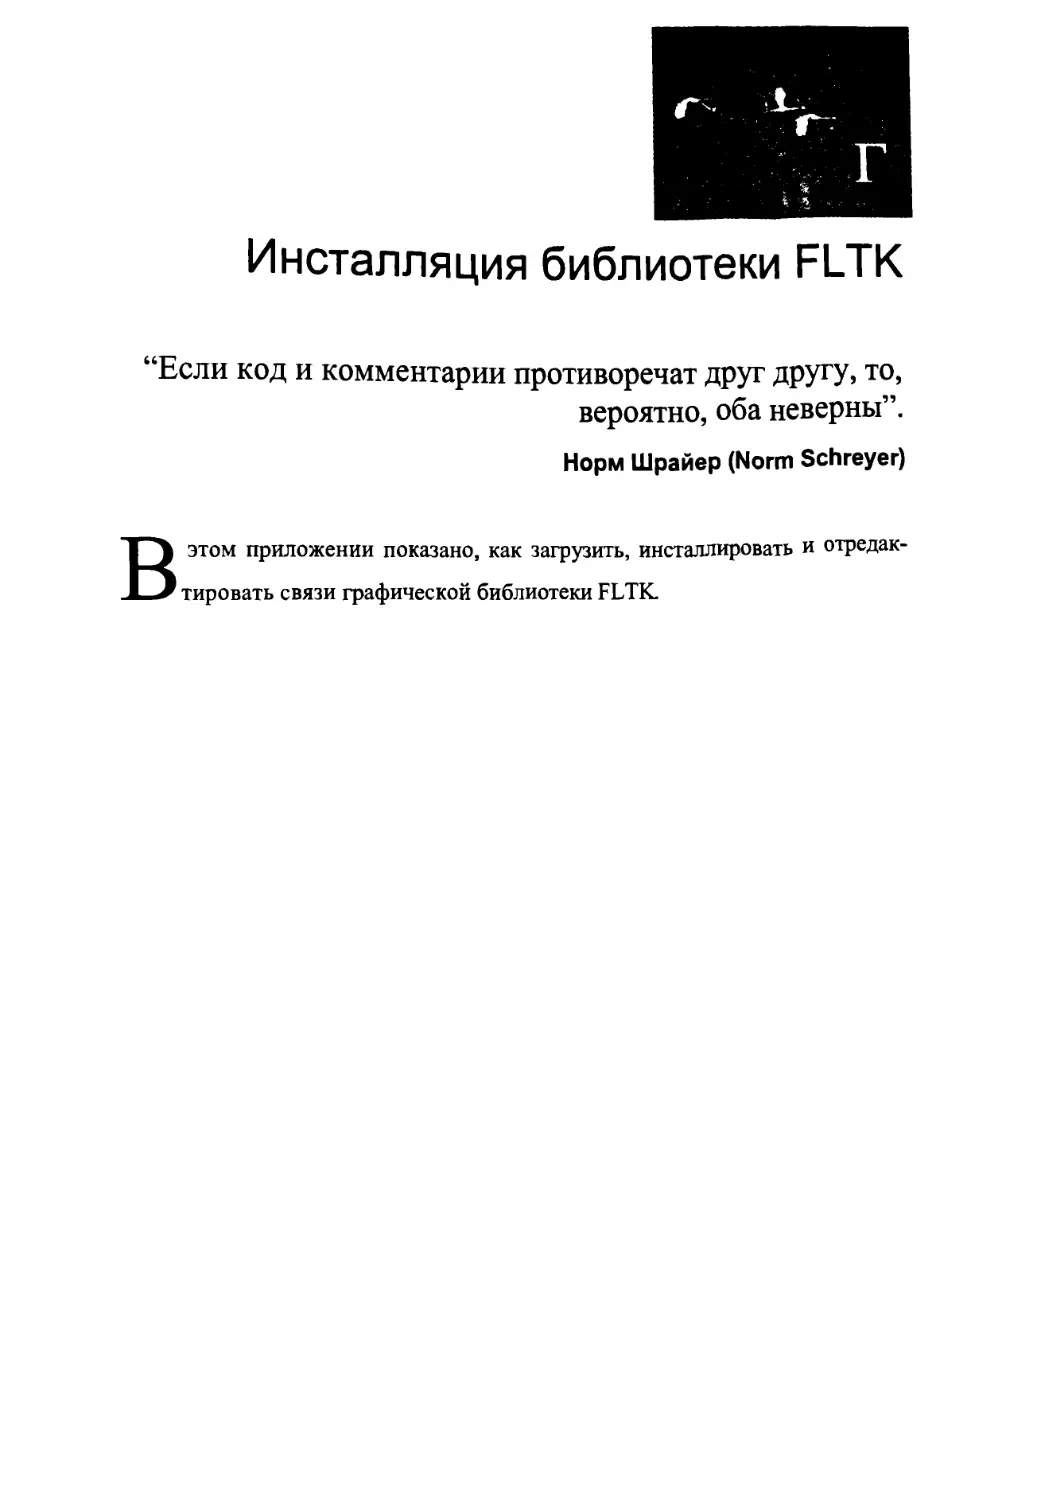 Приложение Г. Инсталляция библиотеки FLTK